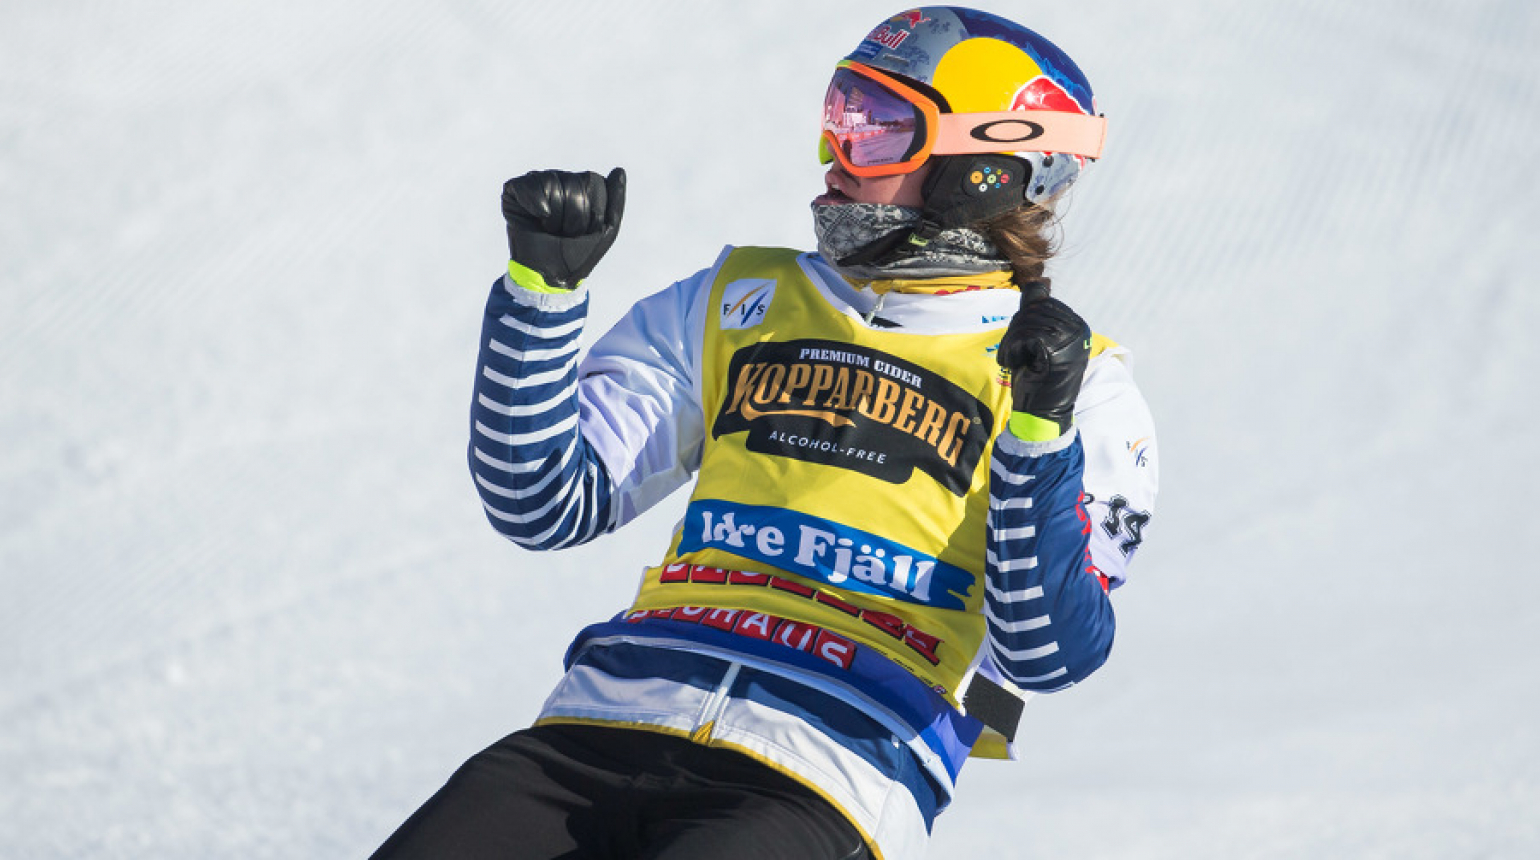 Dva čeští snowboardcrossaři jsou ve finále SP v Cortině! Do vyřazovacích jízd postoupila Eva Adamczyková a Jan Kubičík